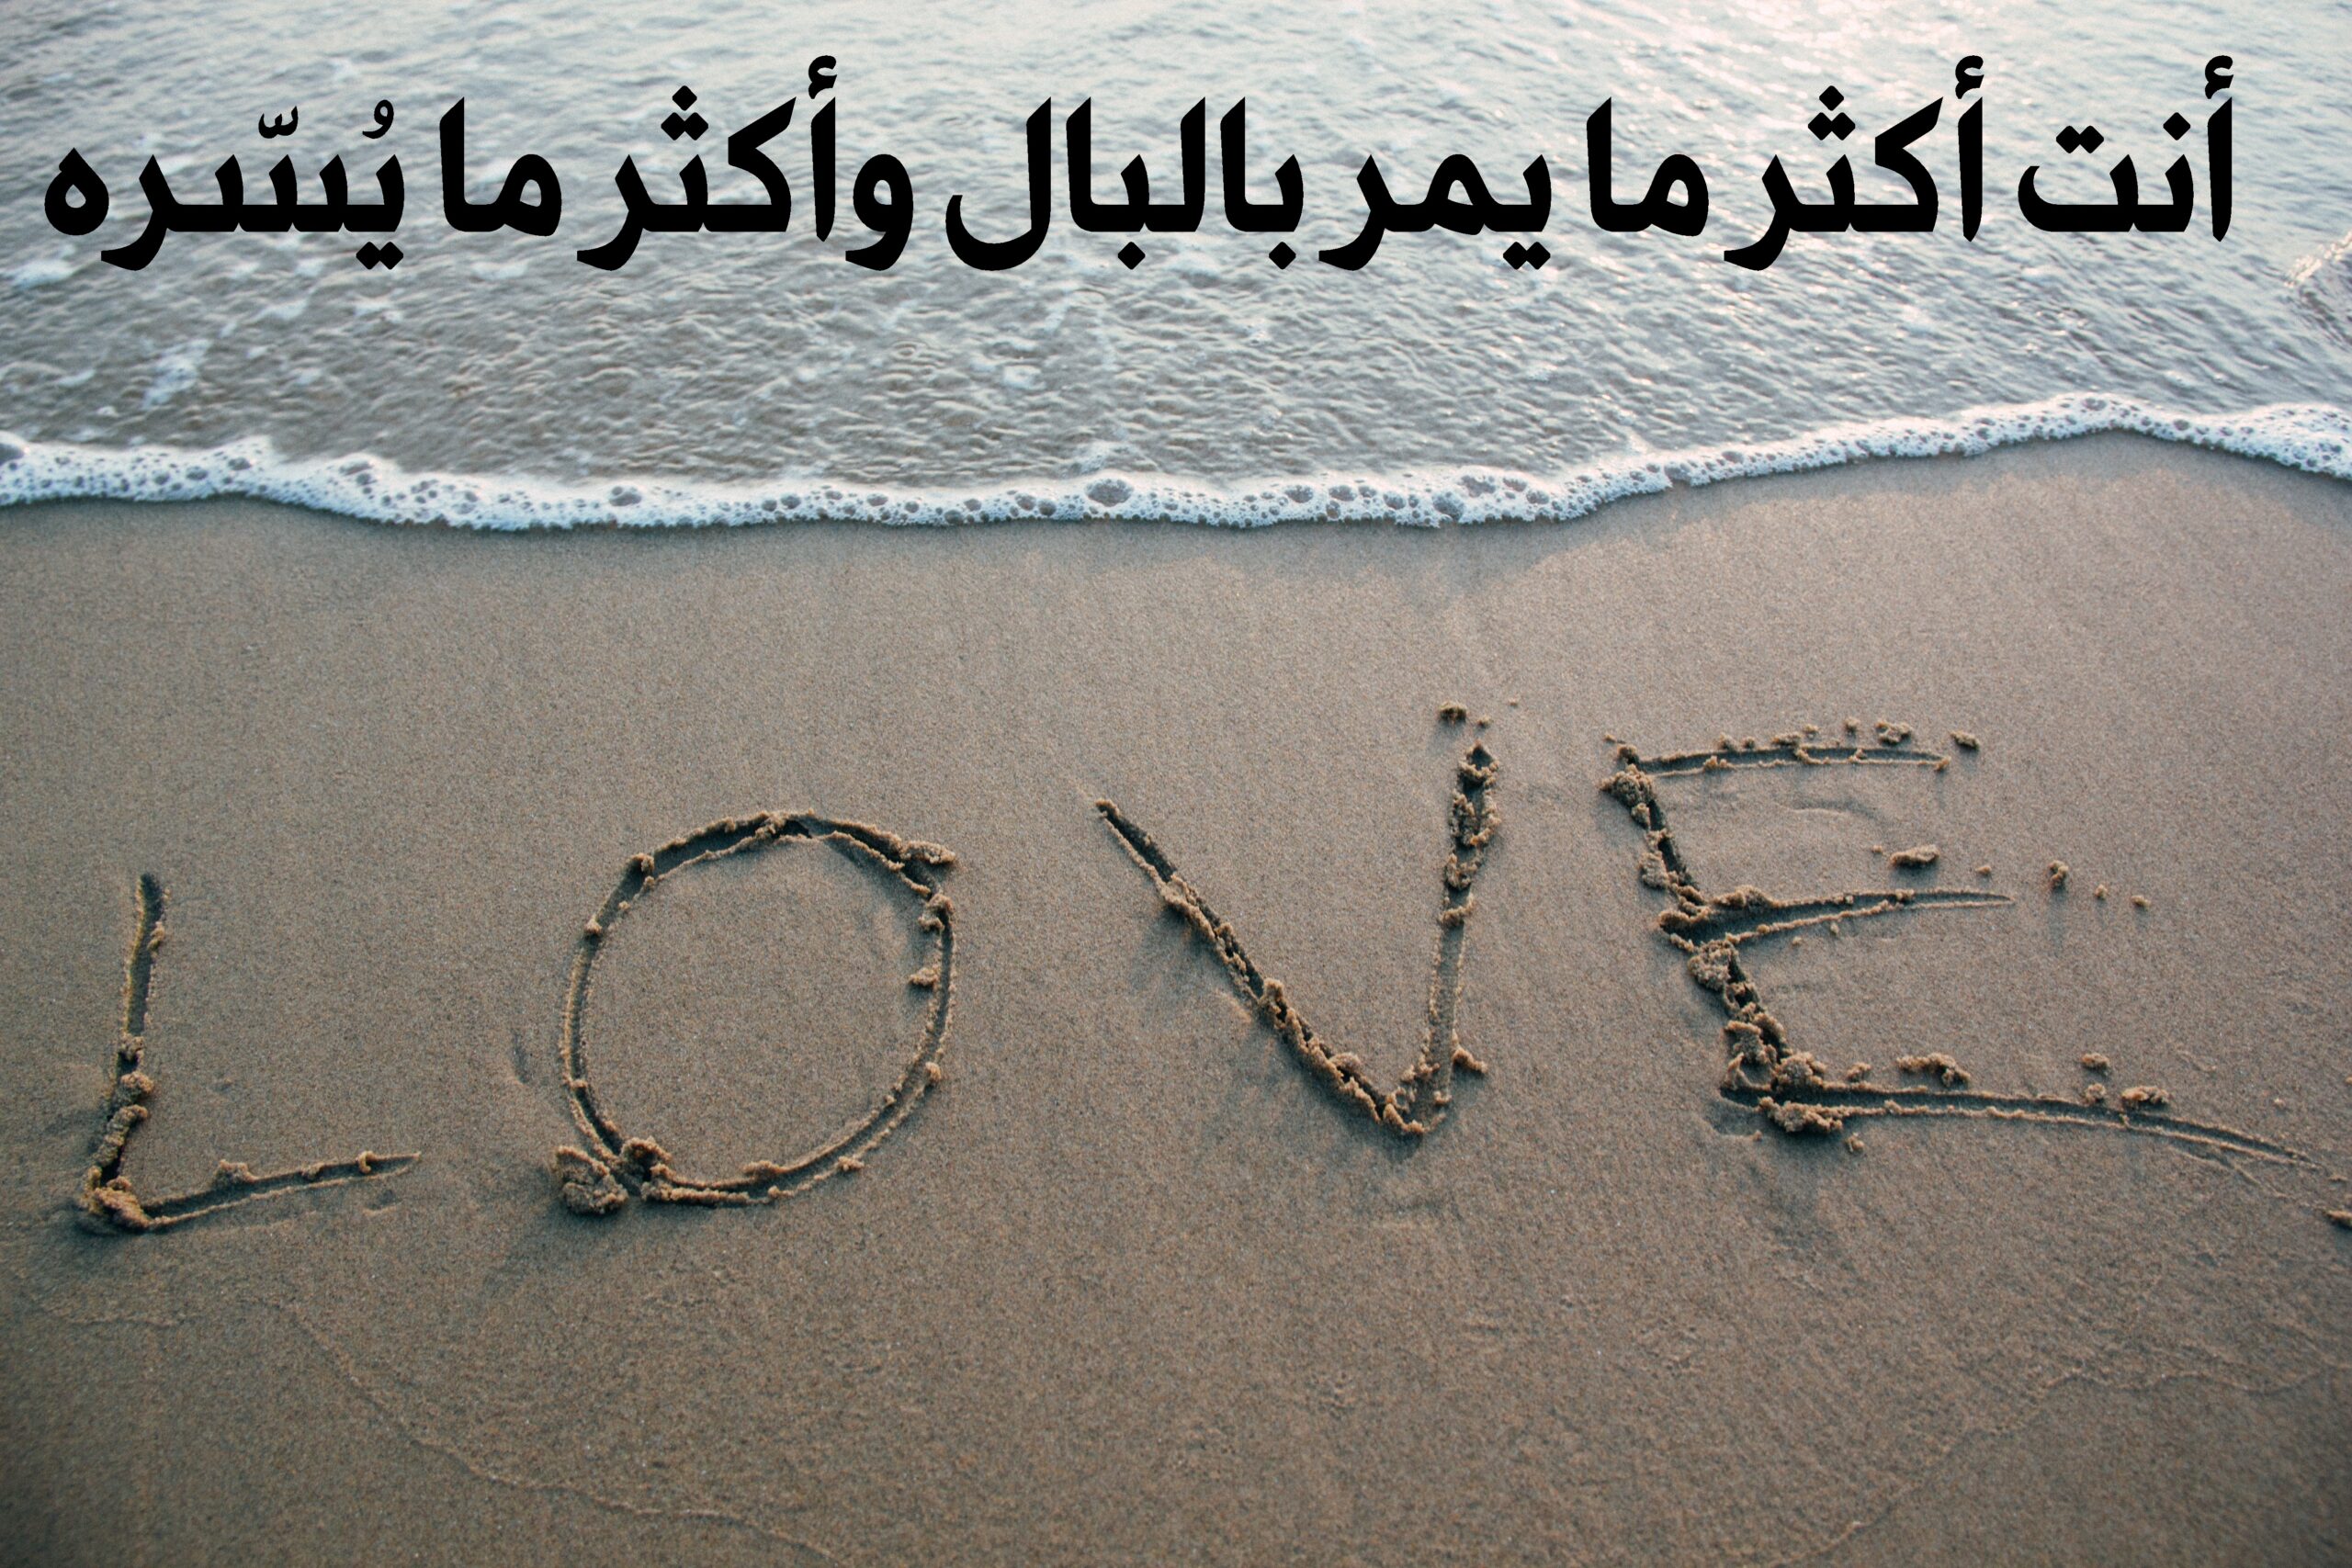 صورة جميلة للبحر والرمل مكتوب عليه كلمة أحبك بالإنجليزية